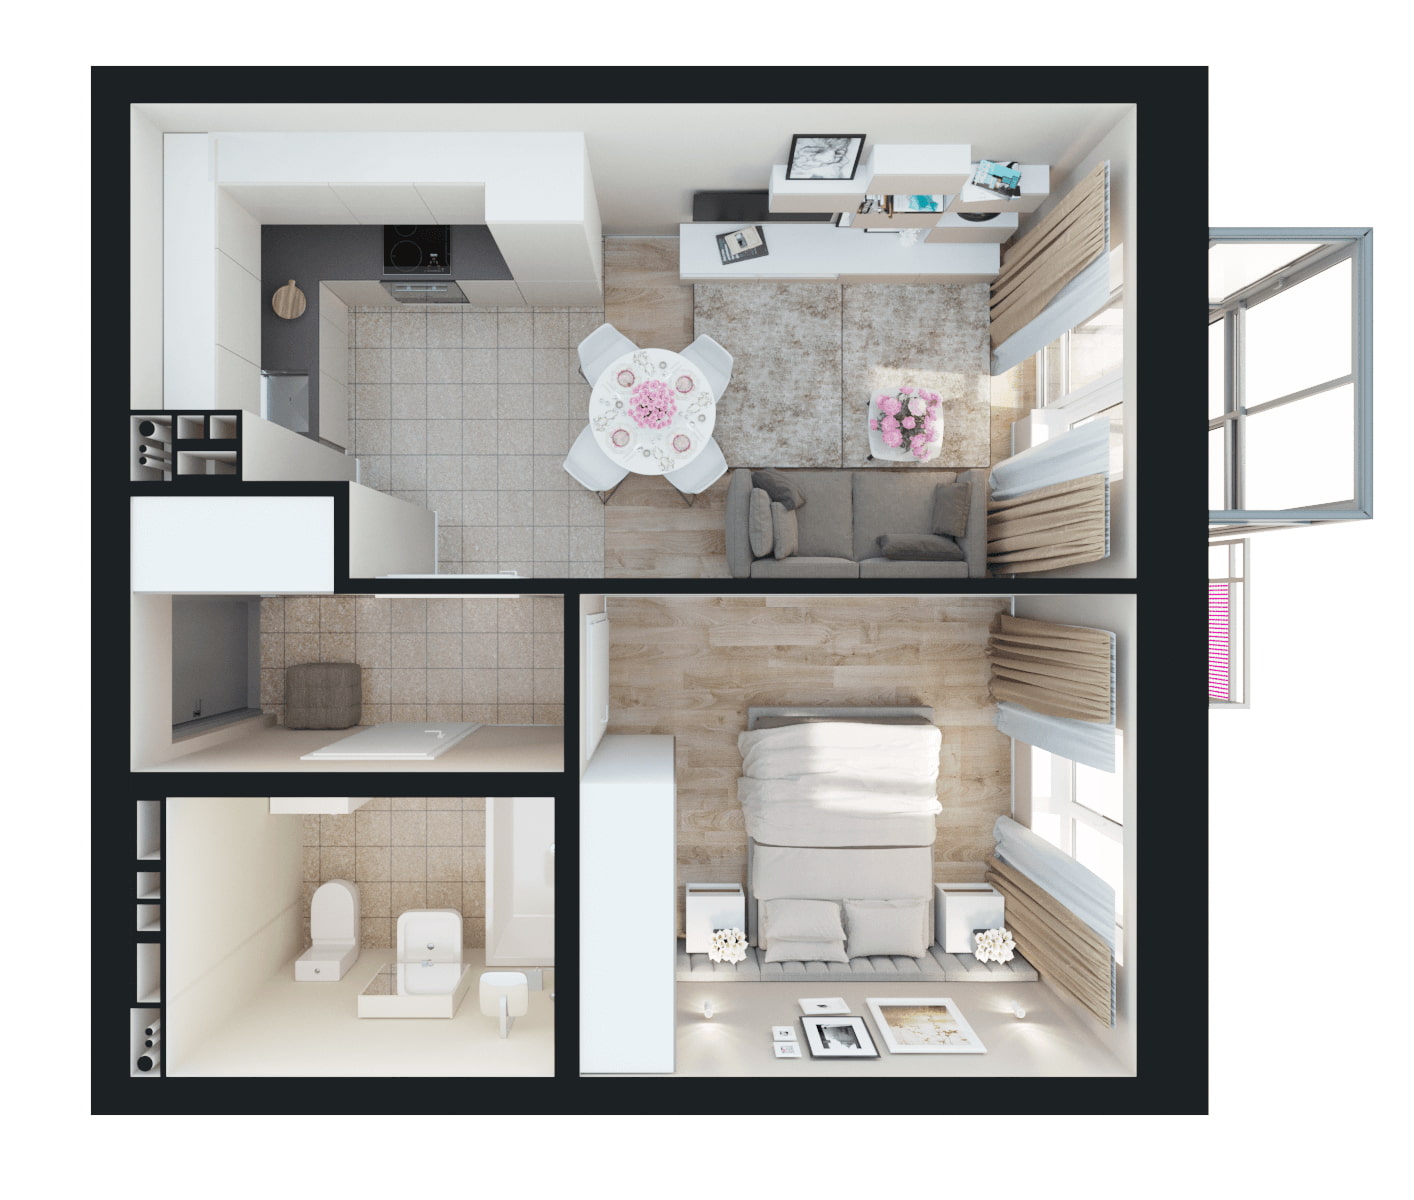 Дизайн однокомнатной квартиры 40 кв. м: фото в современном стиле, способы разграничения пространства, популярные принципы оформления